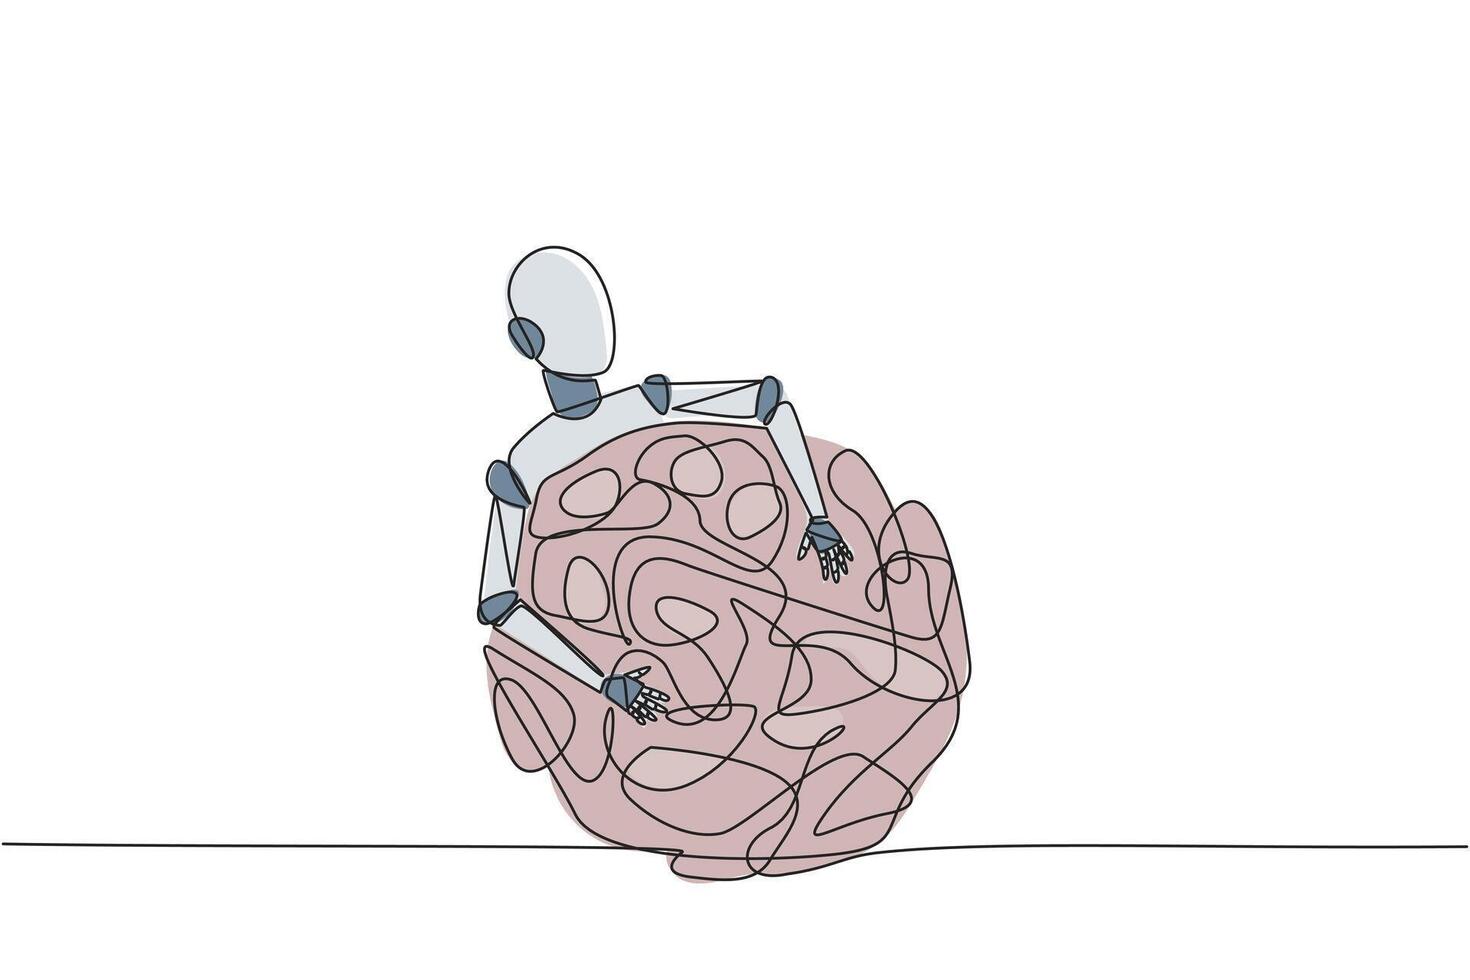 single een lijn tekening robot knuffelen verstrikt cirkel. zijn een lang werkwijze dat maakt ongerustheid naar slagen van maken de perfect robot. toekomst technologie. doorlopend lijn ontwerp grafisch illustratie vector